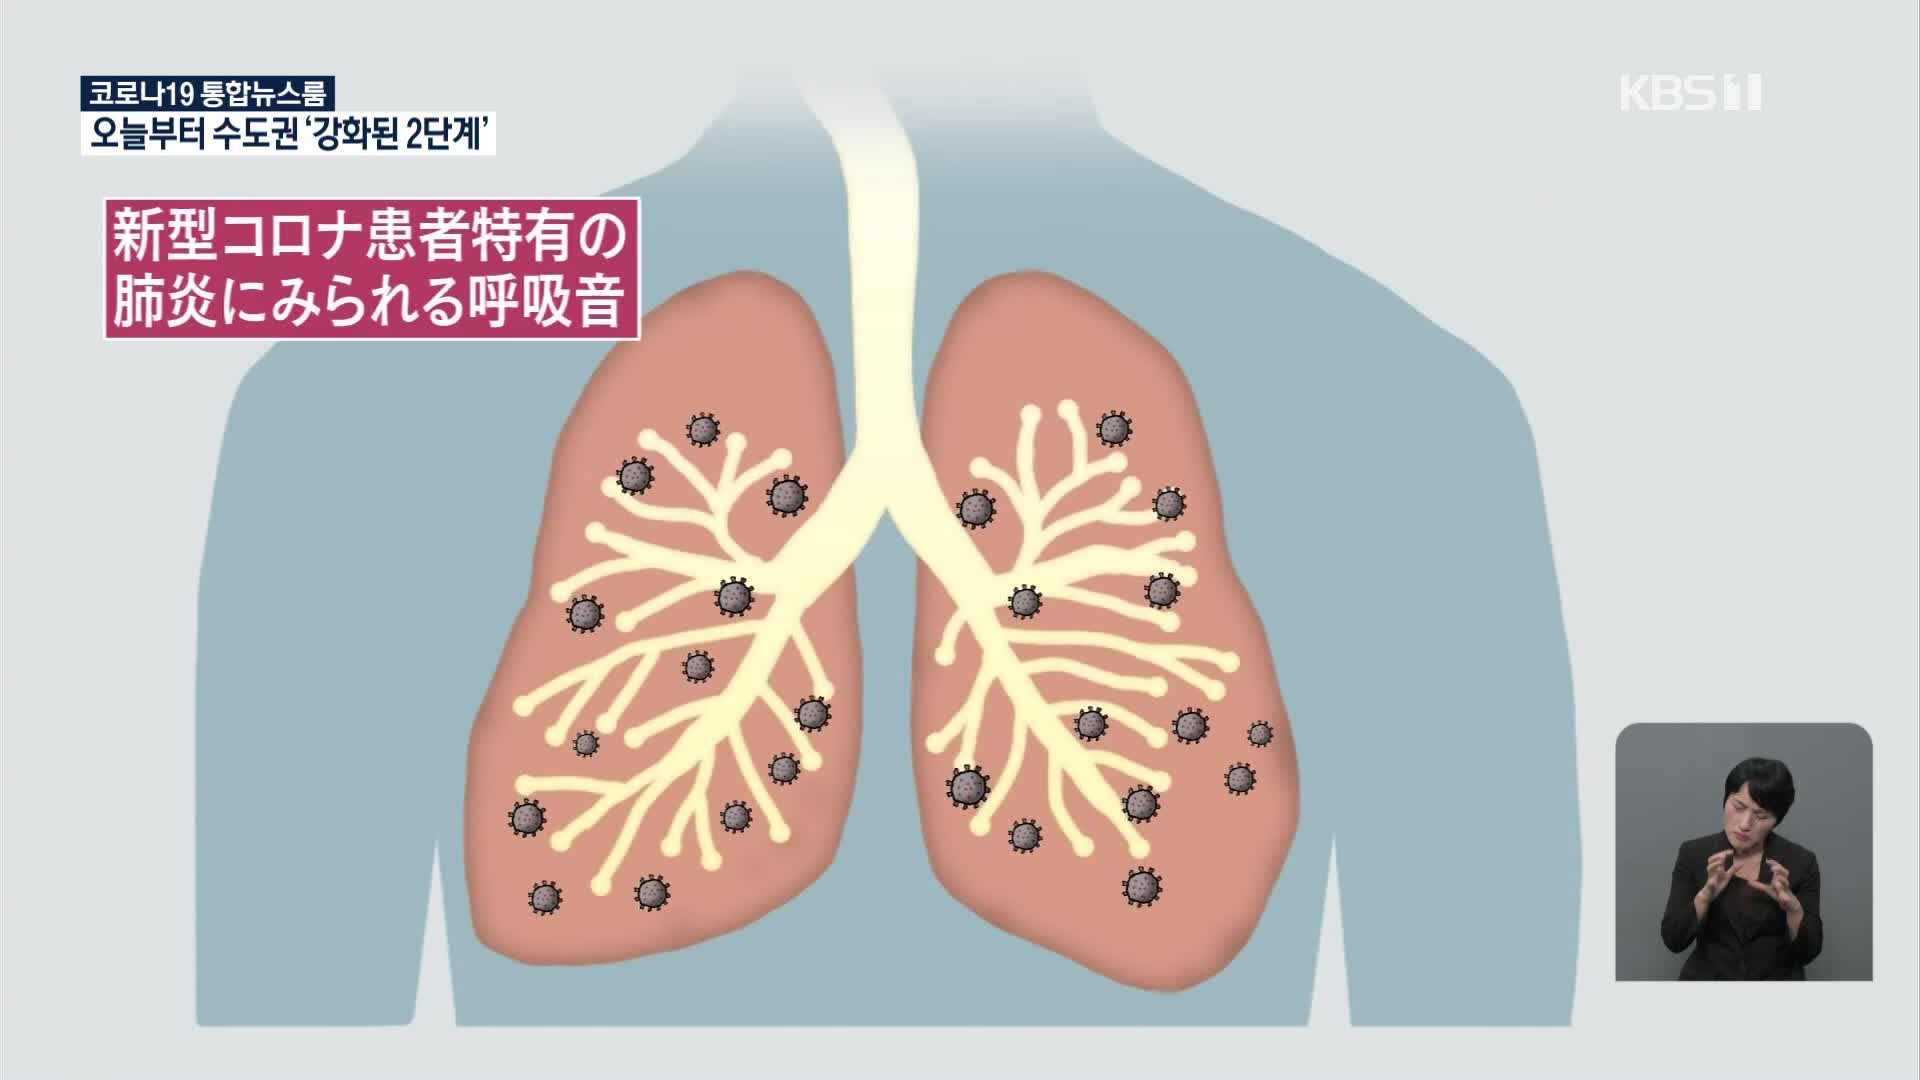 일본서 폐 소리로 코로나19 환자 상태 진단